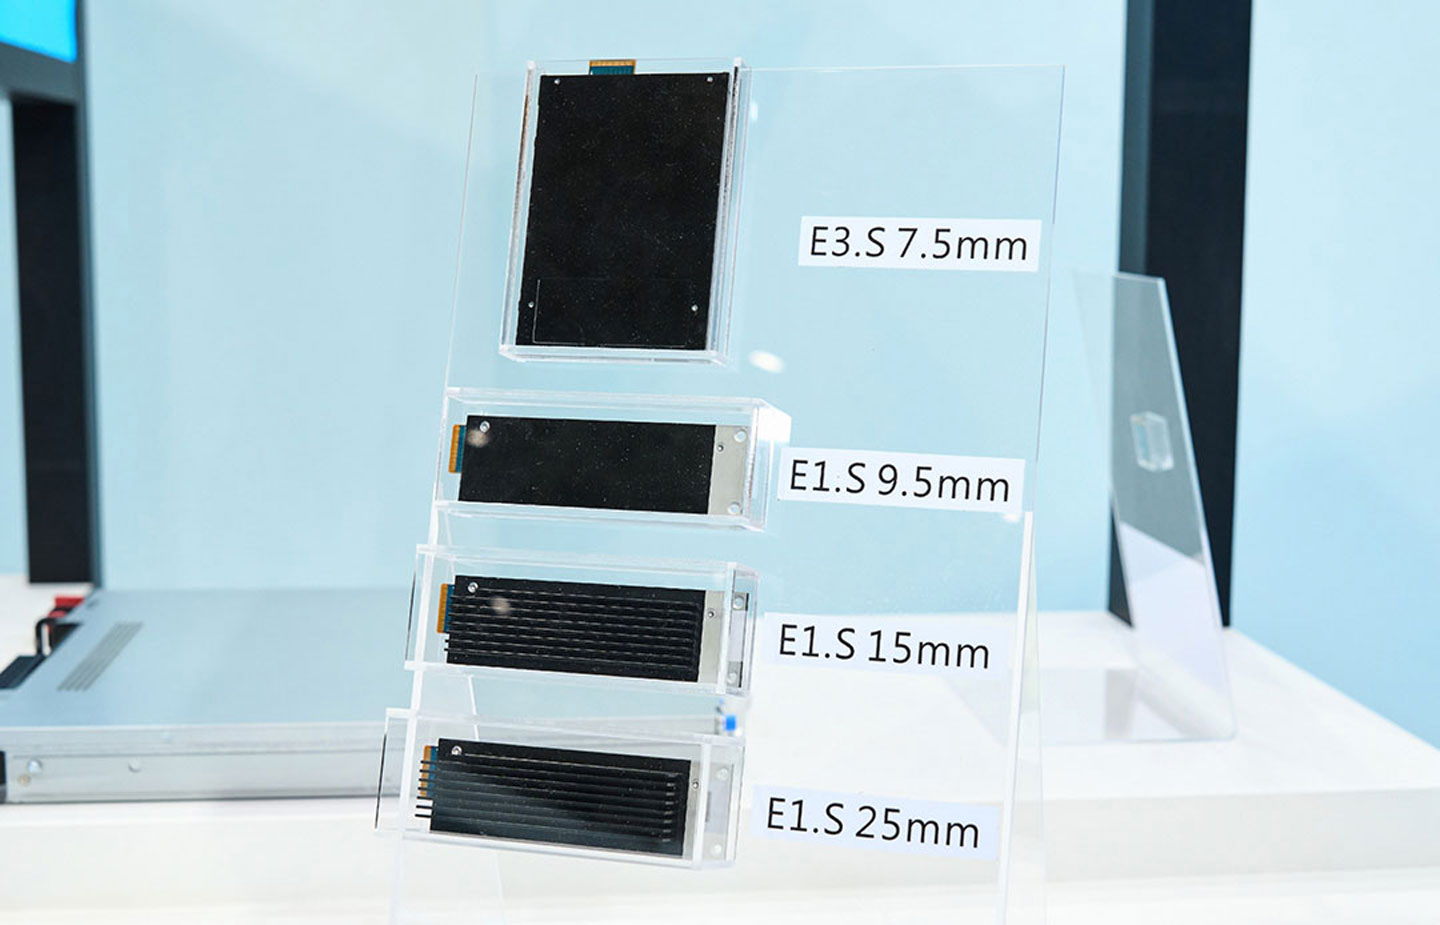 EDSFF 數據中心 SSD 採用 KIOXIA 新式的 E1.S 與 E3.S 形式，現場也提供了不同尺寸的產品比較。